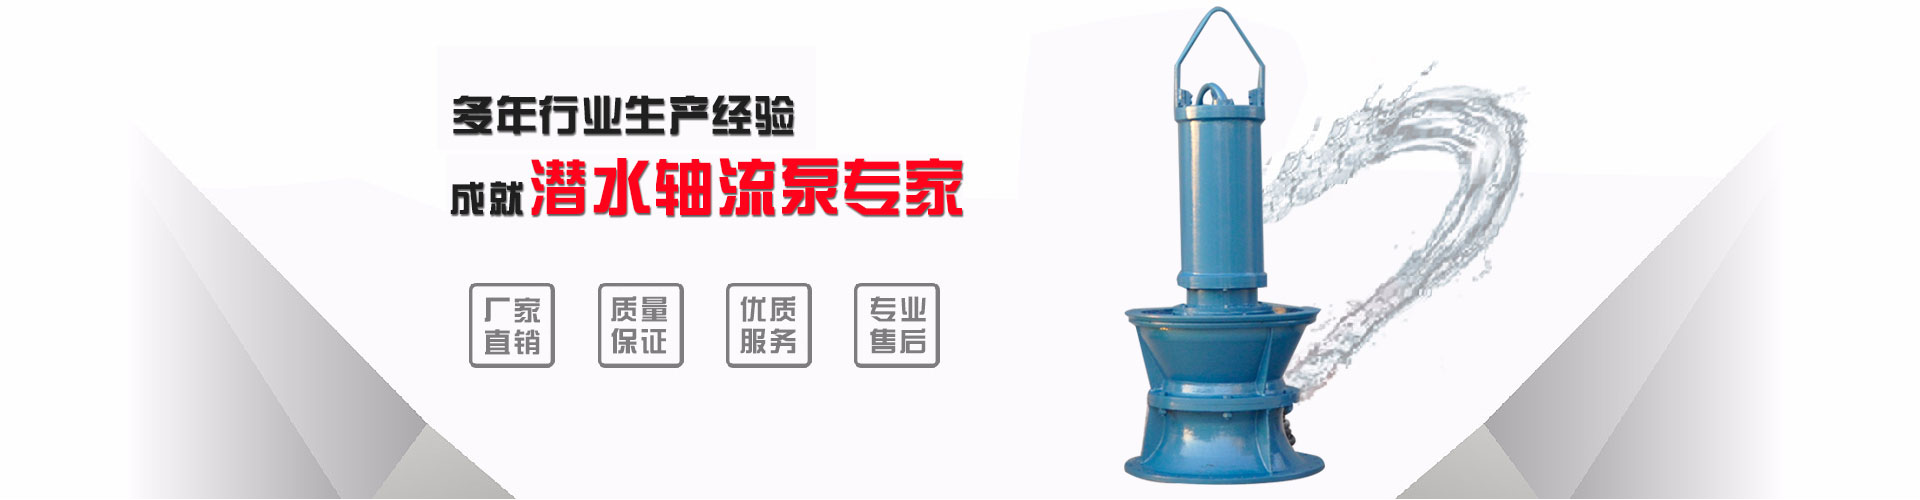 武汉耐腐蚀浮筒泵_柳州浮筒泵